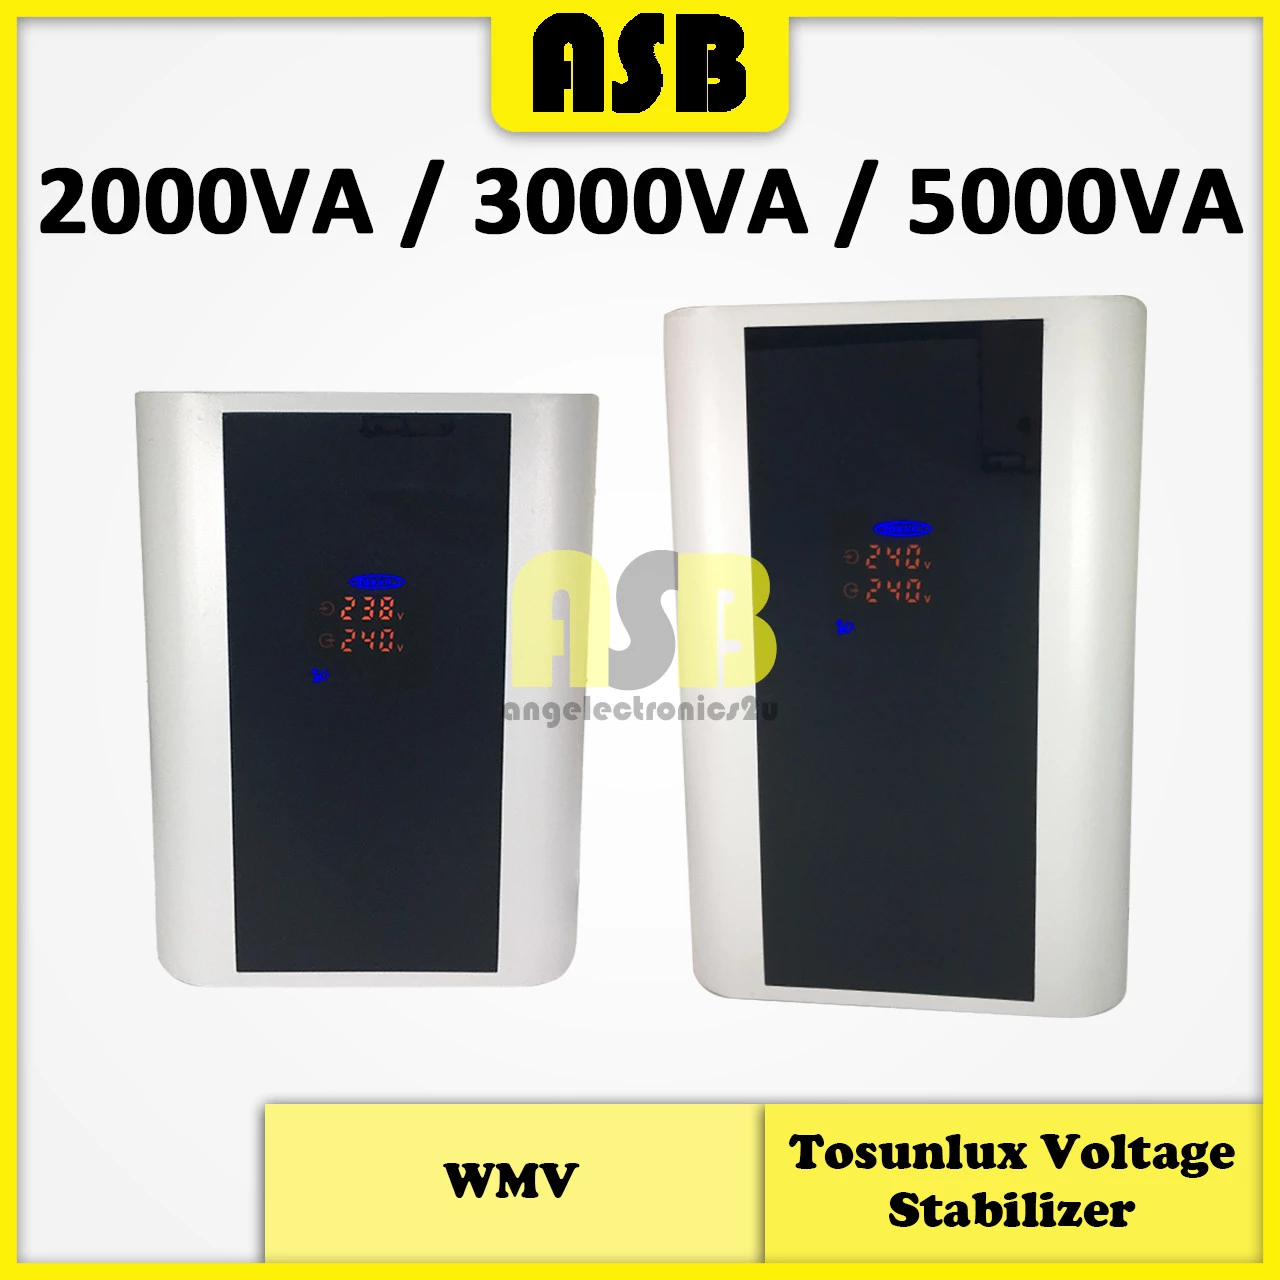 (1pc) TOSUNLUX Voltage Stabilizer WMV ( 2000VA / 3000VA / 5000VA )